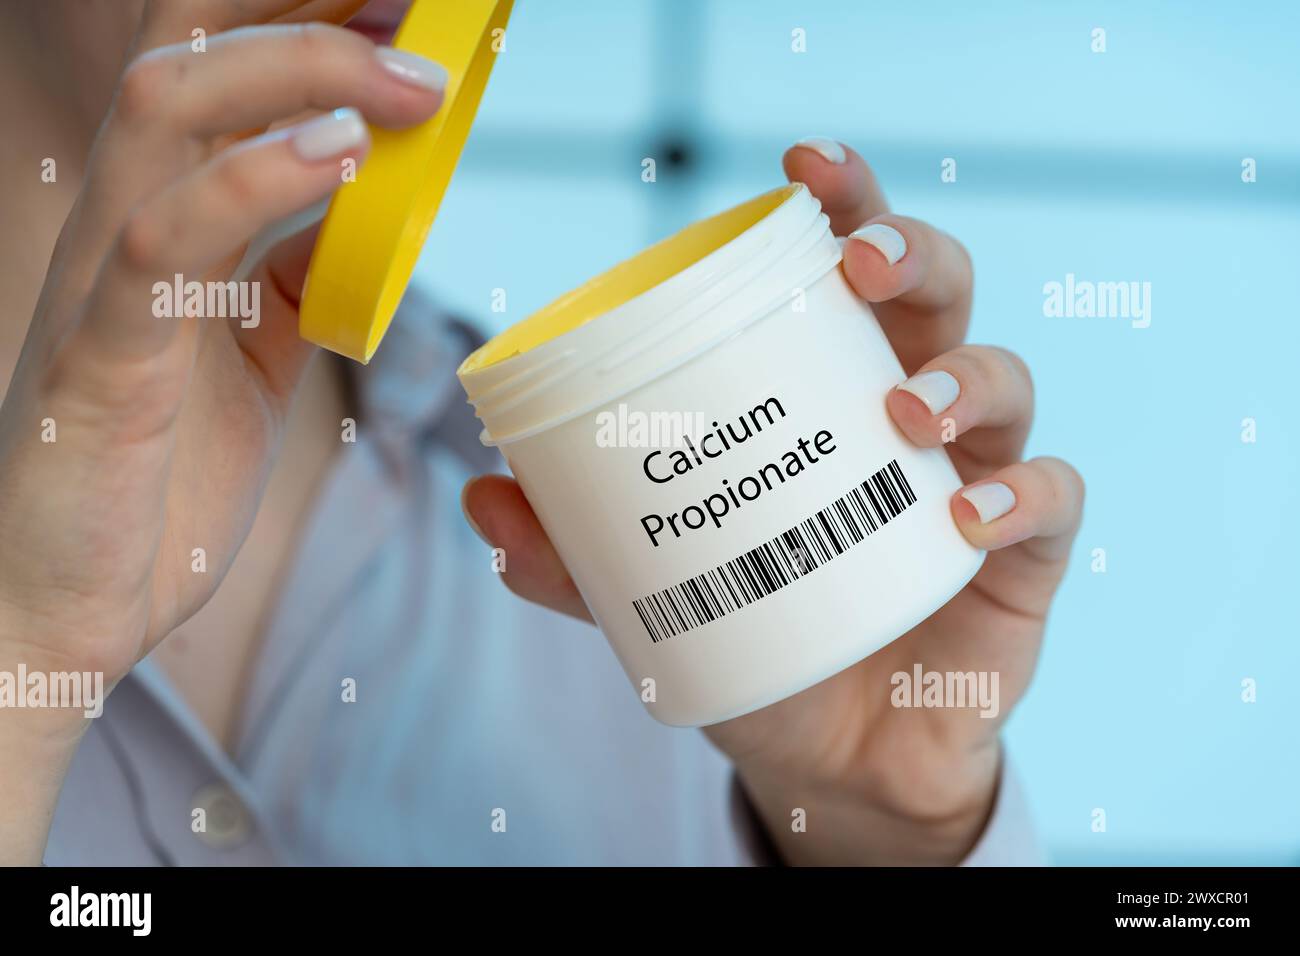 Calciumpropionat-Lebensmittelzusatz, konzeptionelles Bild. Ein Konservierungsmittel, das Migräne und allergische Reaktionen bei empfindlichen Personen auslösen kann. Stockfoto